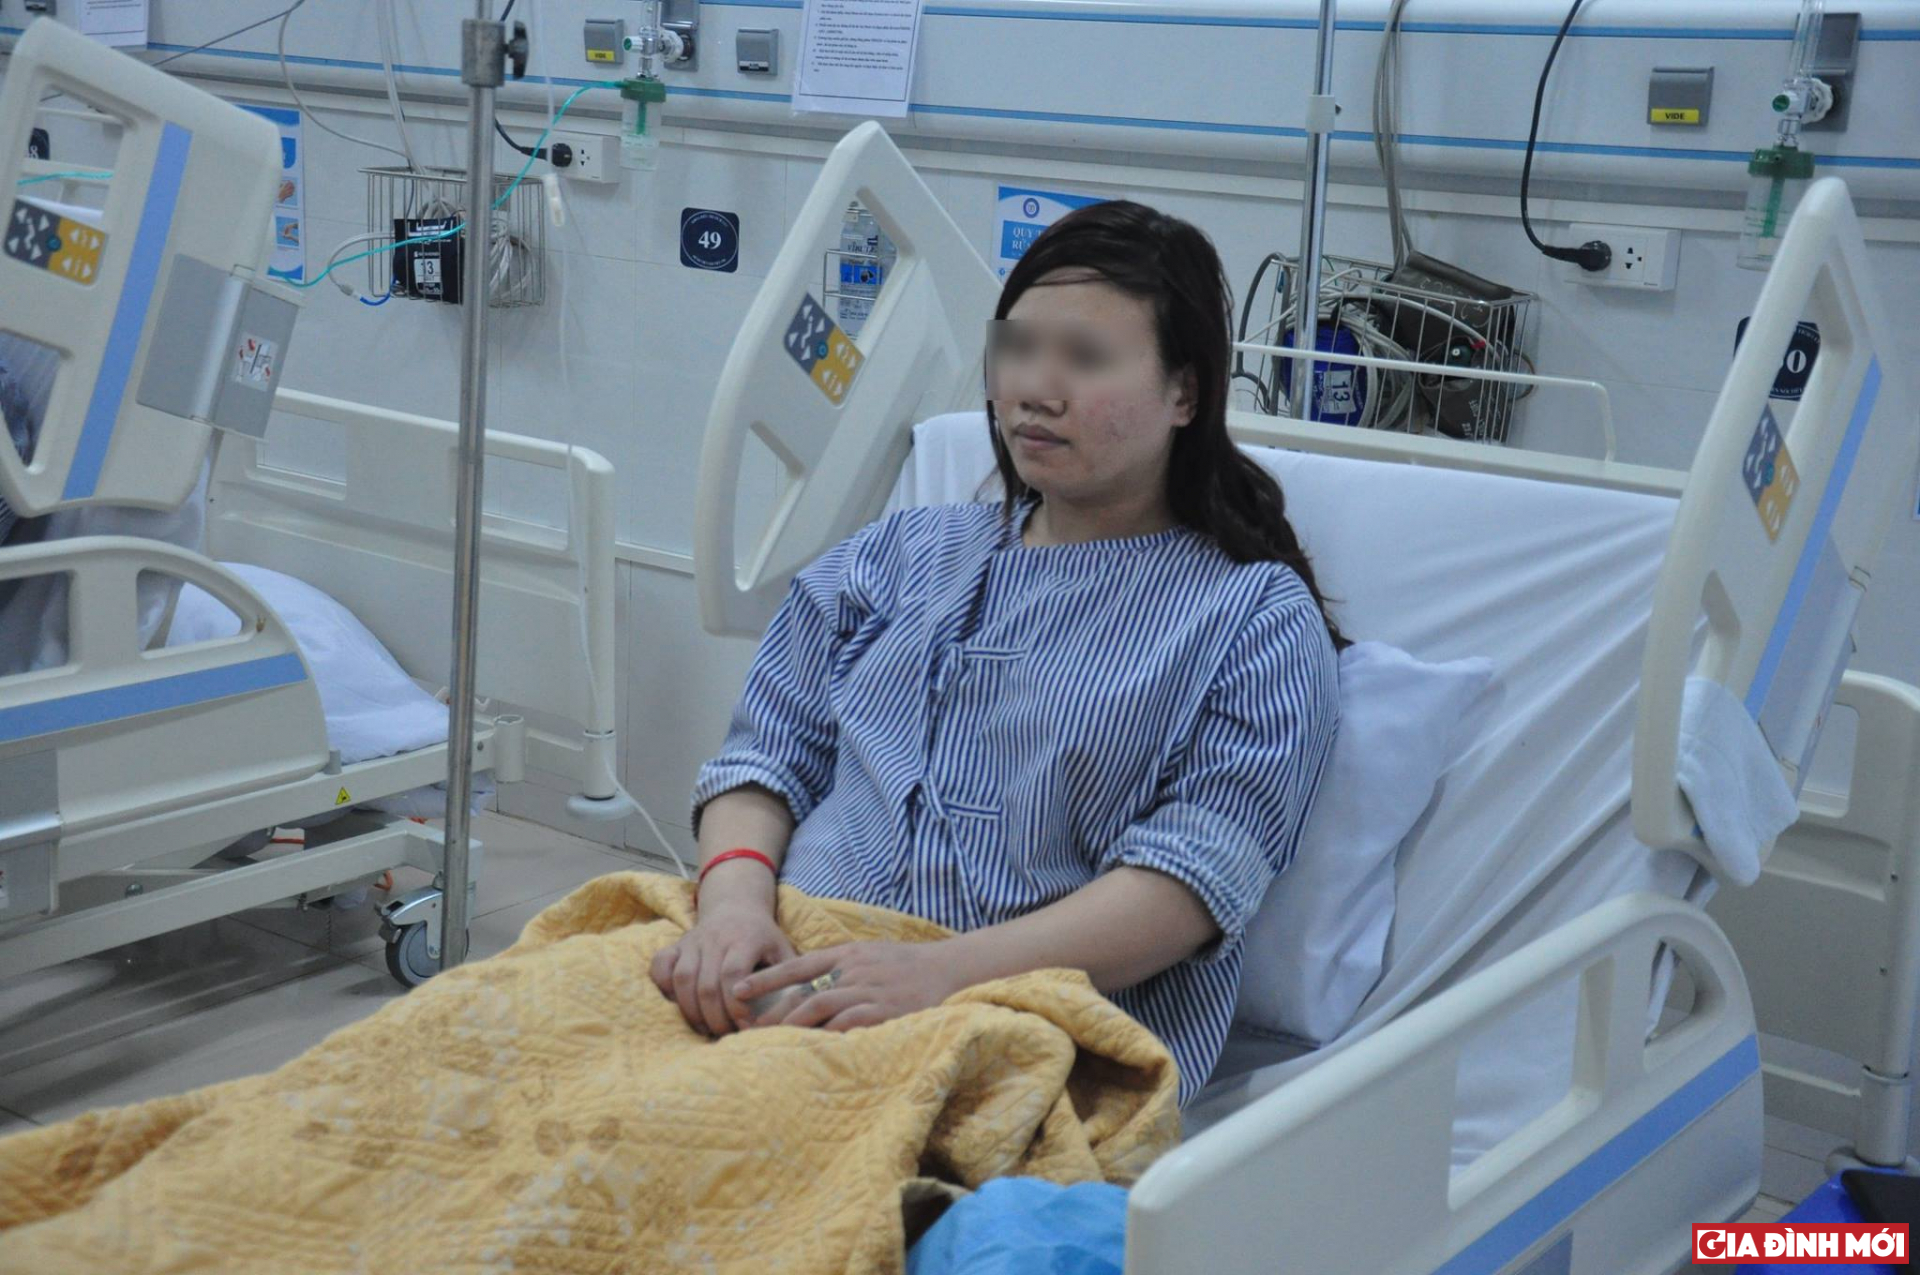 Sức khỏe bệnh nhân Trần Ngọc Th. đã ổn định sau phẫu thuật